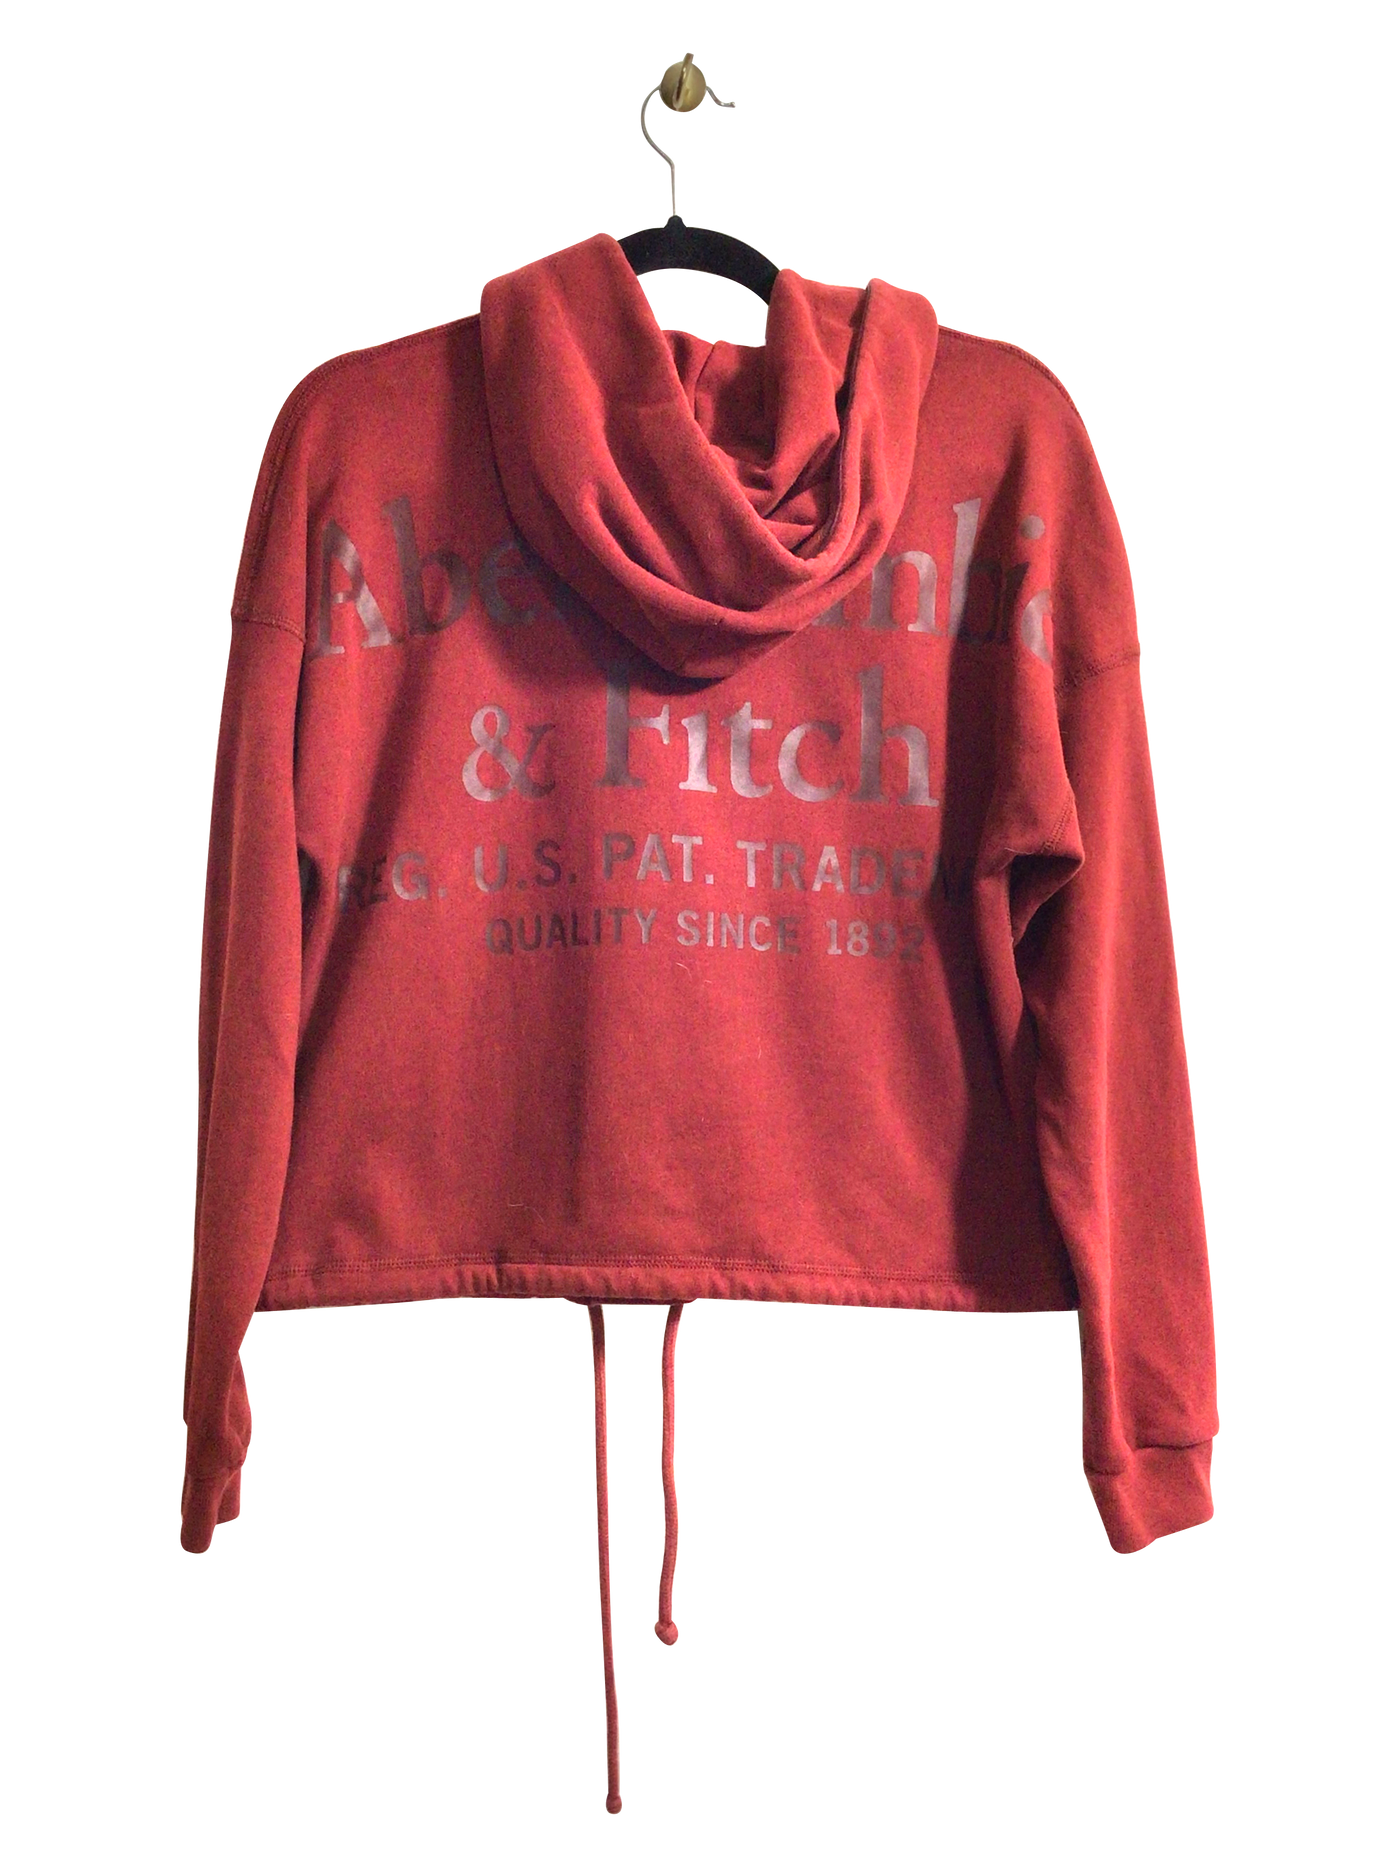 ABERCROMBIE & FITCH Women Sweatshirts Regular fit in Red - Size S | 13 $ KOOP